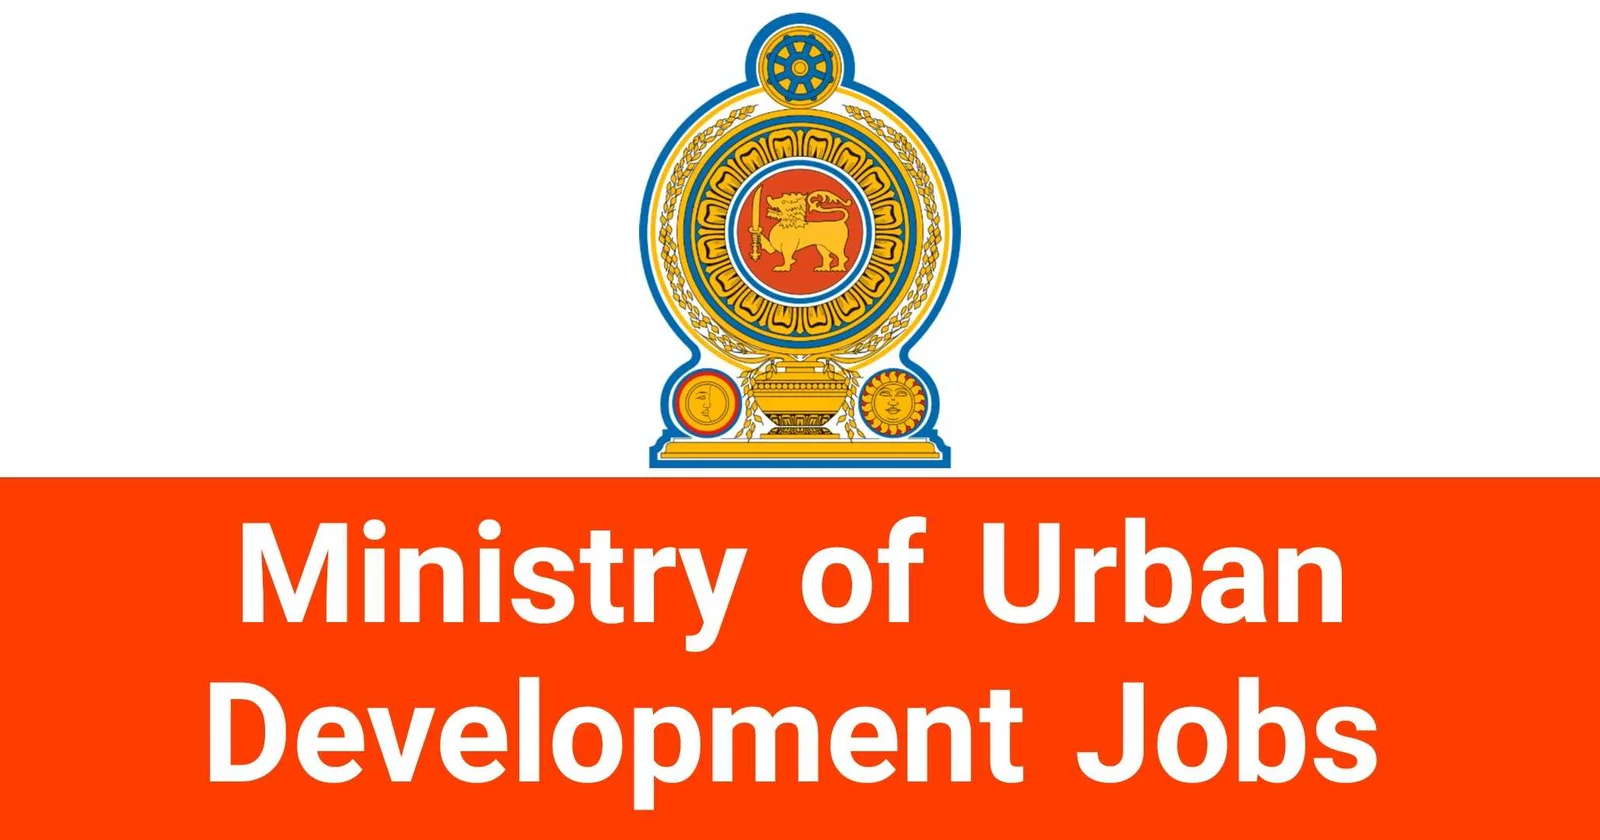 Ministry of Urban Development Jobs Vacancies Recruitments Applications